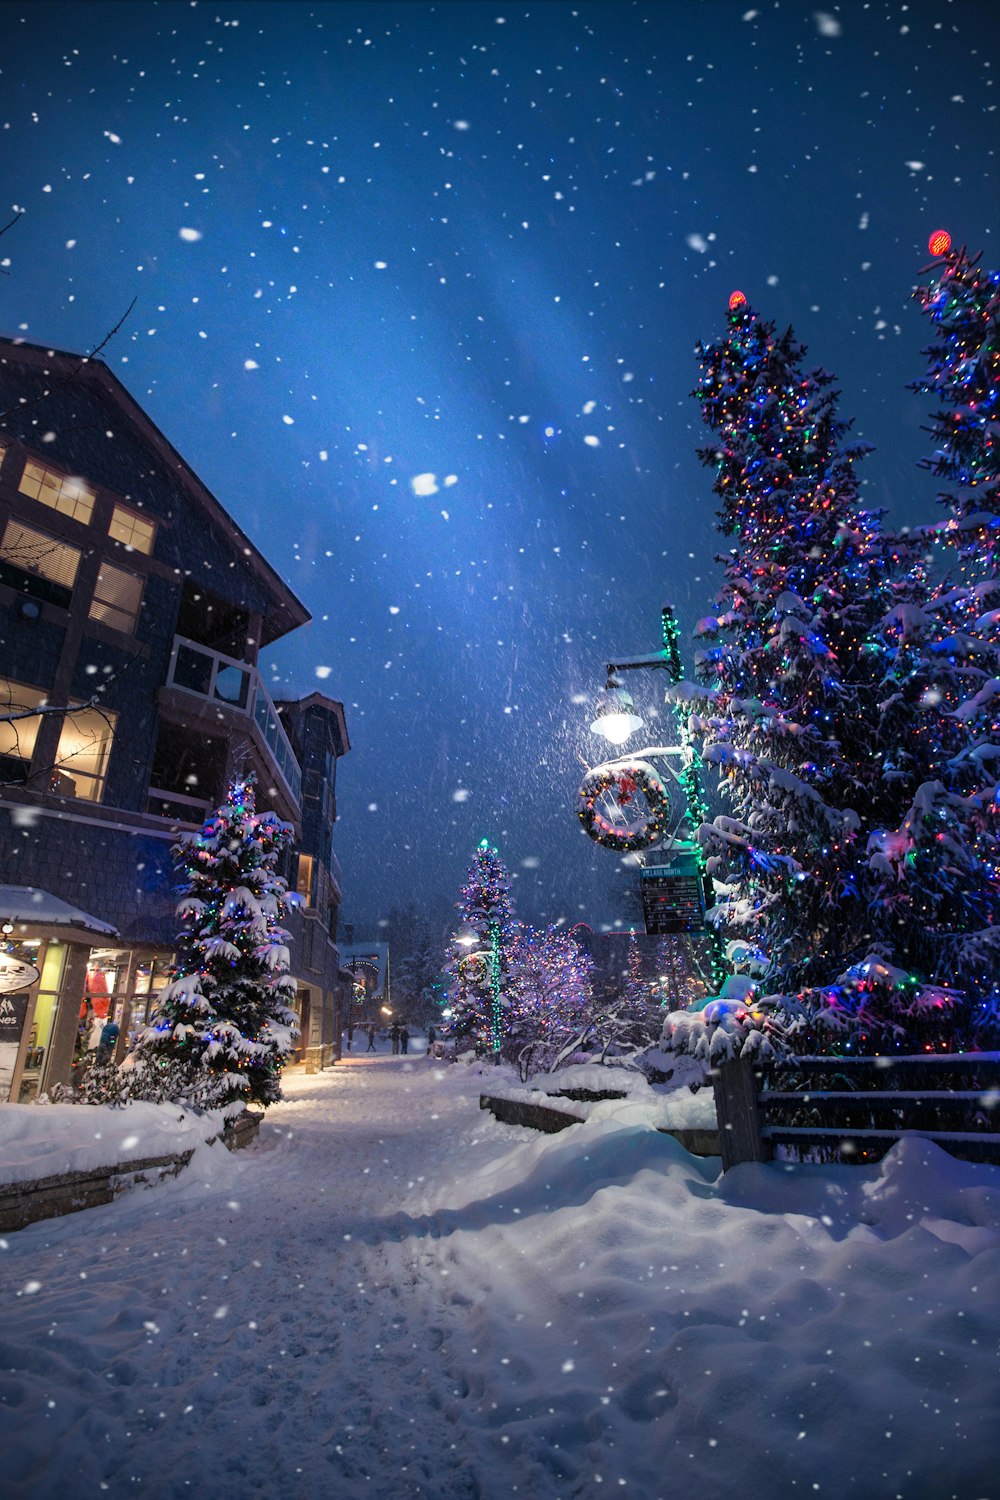 Những hình ảnh tuyết phủ trắng cùng với những cây thông rực rỡ ánh đèn Noel tạo nên một cảnh sắc tuyệt đẹp và thơ mộng trong mùa đông. Hãy thưởng thức những hình ảnh này để sưởi ấm tâm hồn, tạm quên đi những cái lạnh của mùa đông.